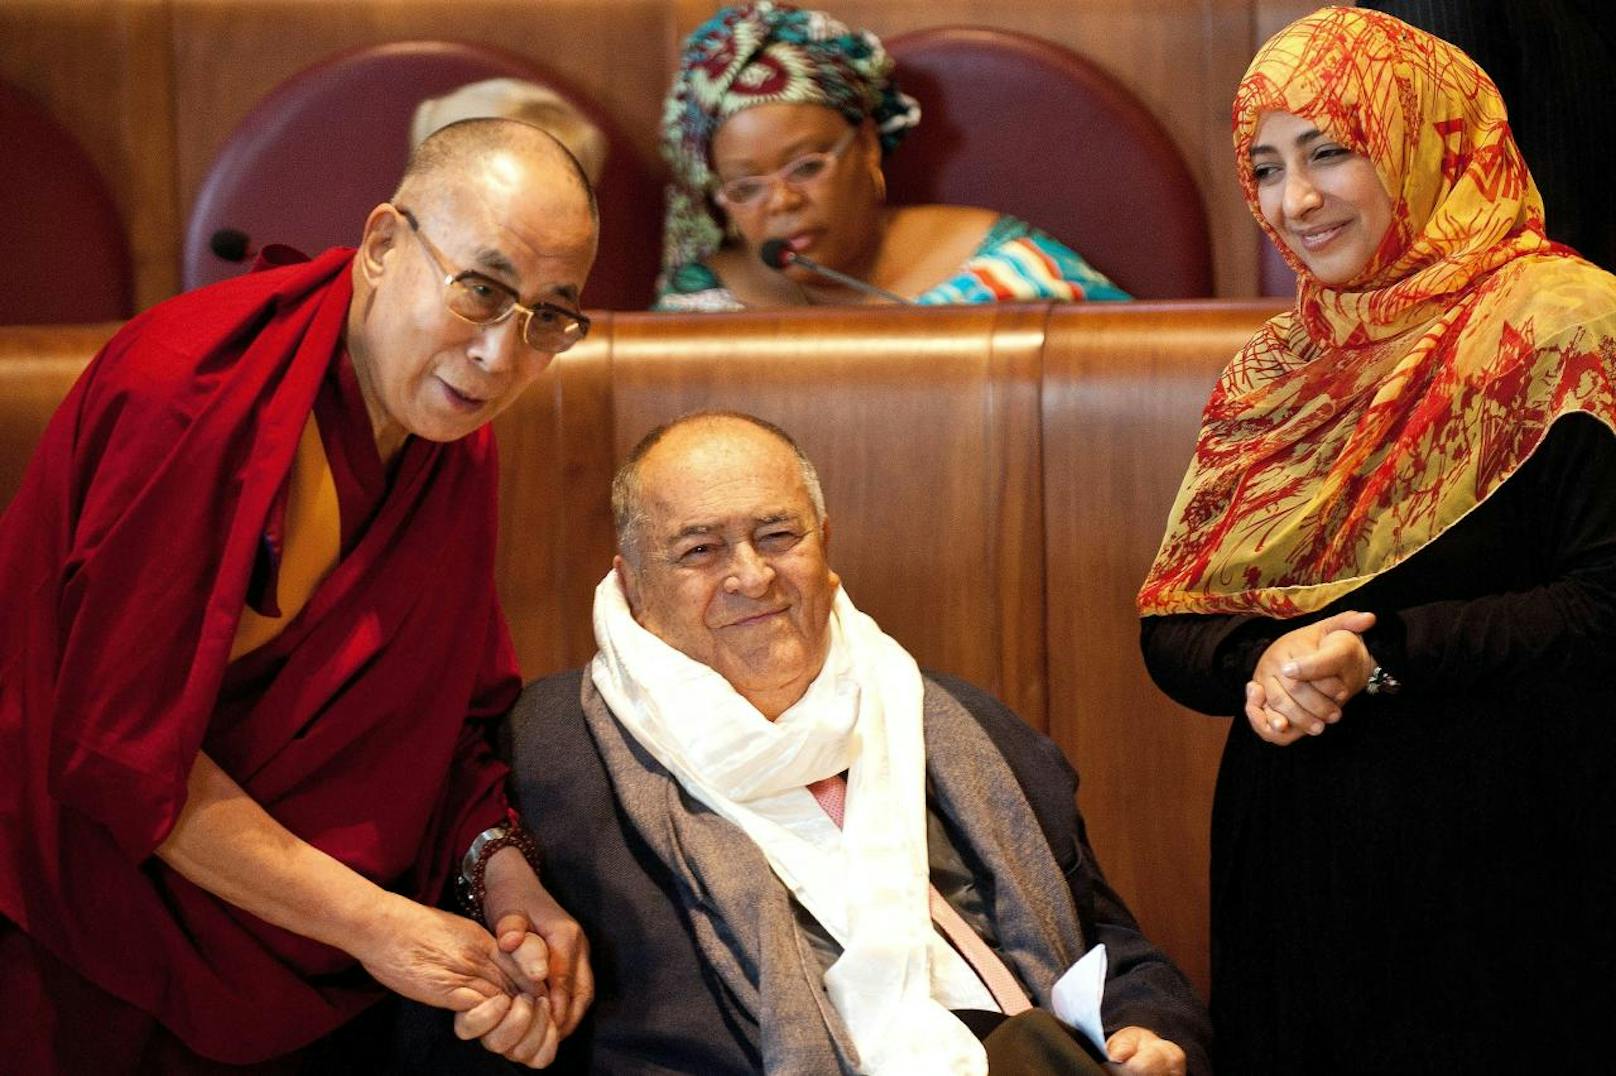 Bernardo Bertolucci mit dem Dalai Lama und Tawakkul Karman